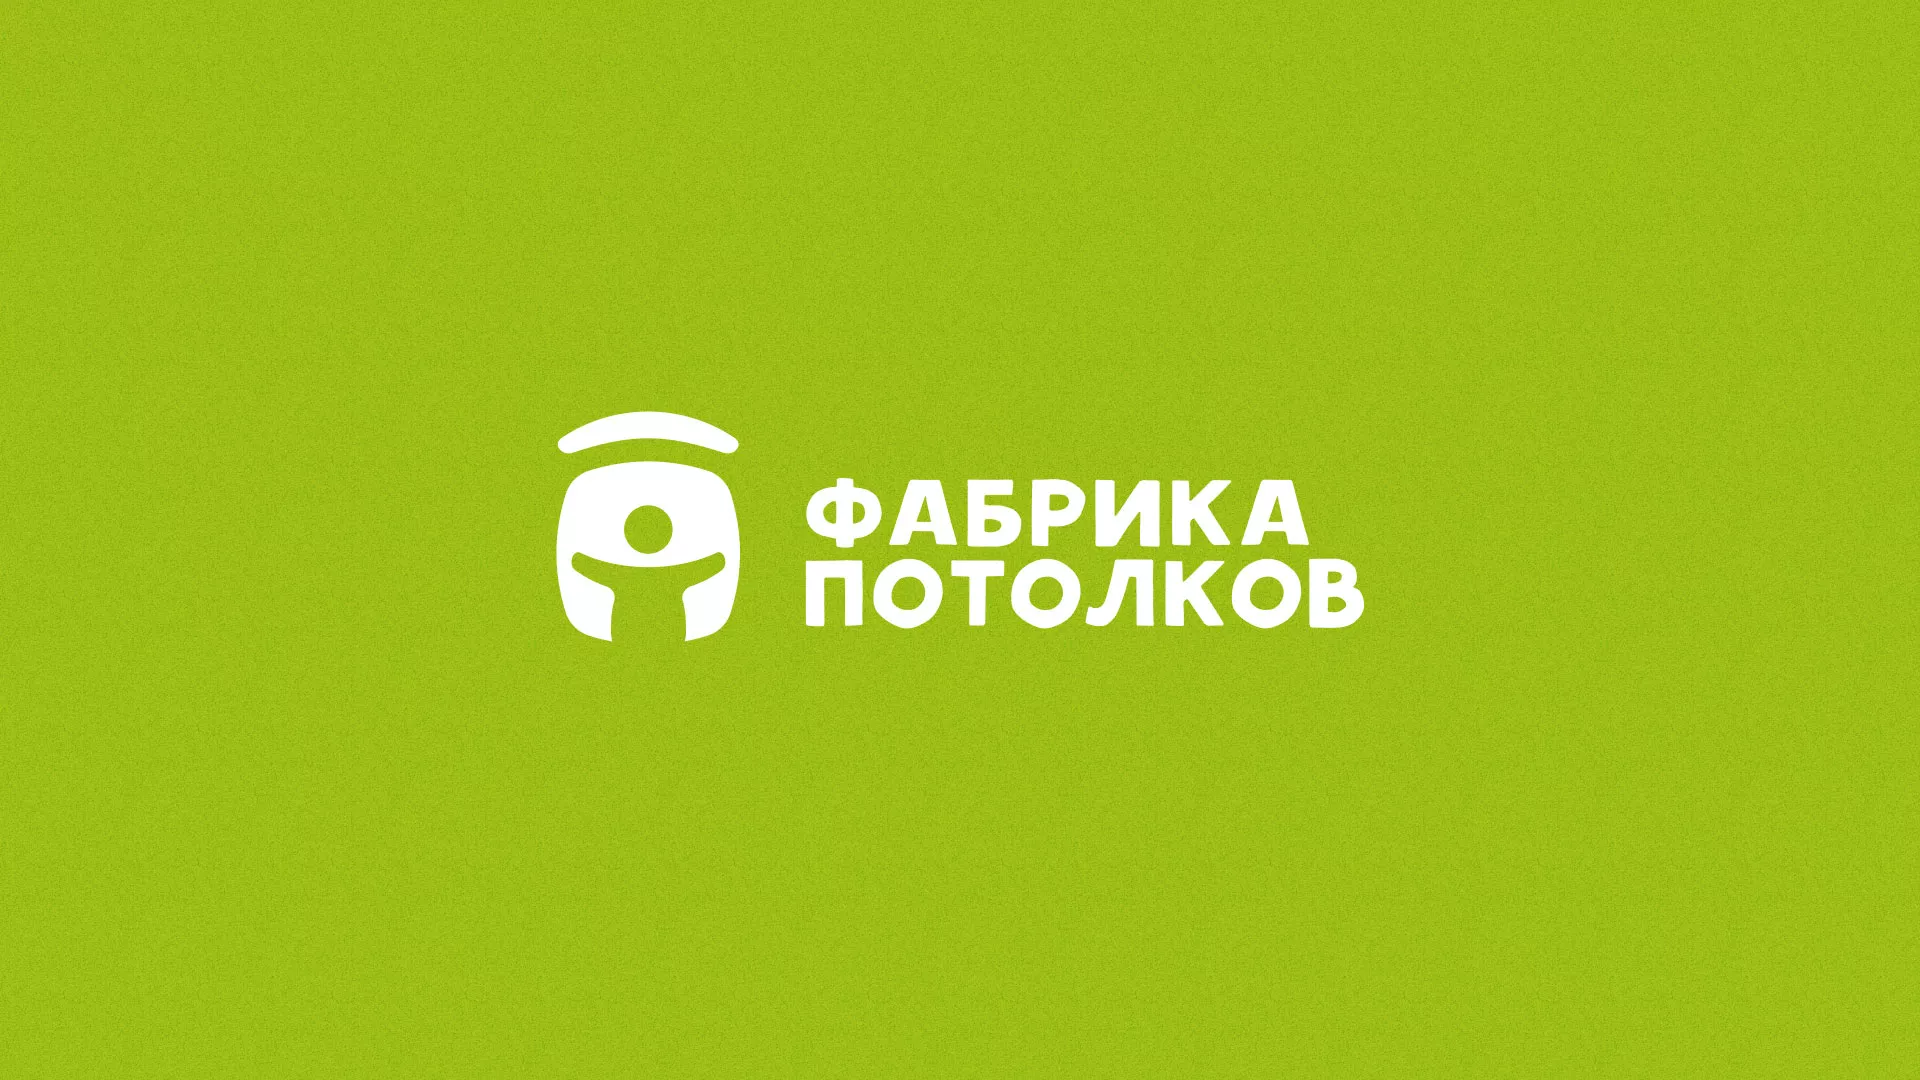 Разработка логотипа для производства натяжных потолков в Старой Руссе